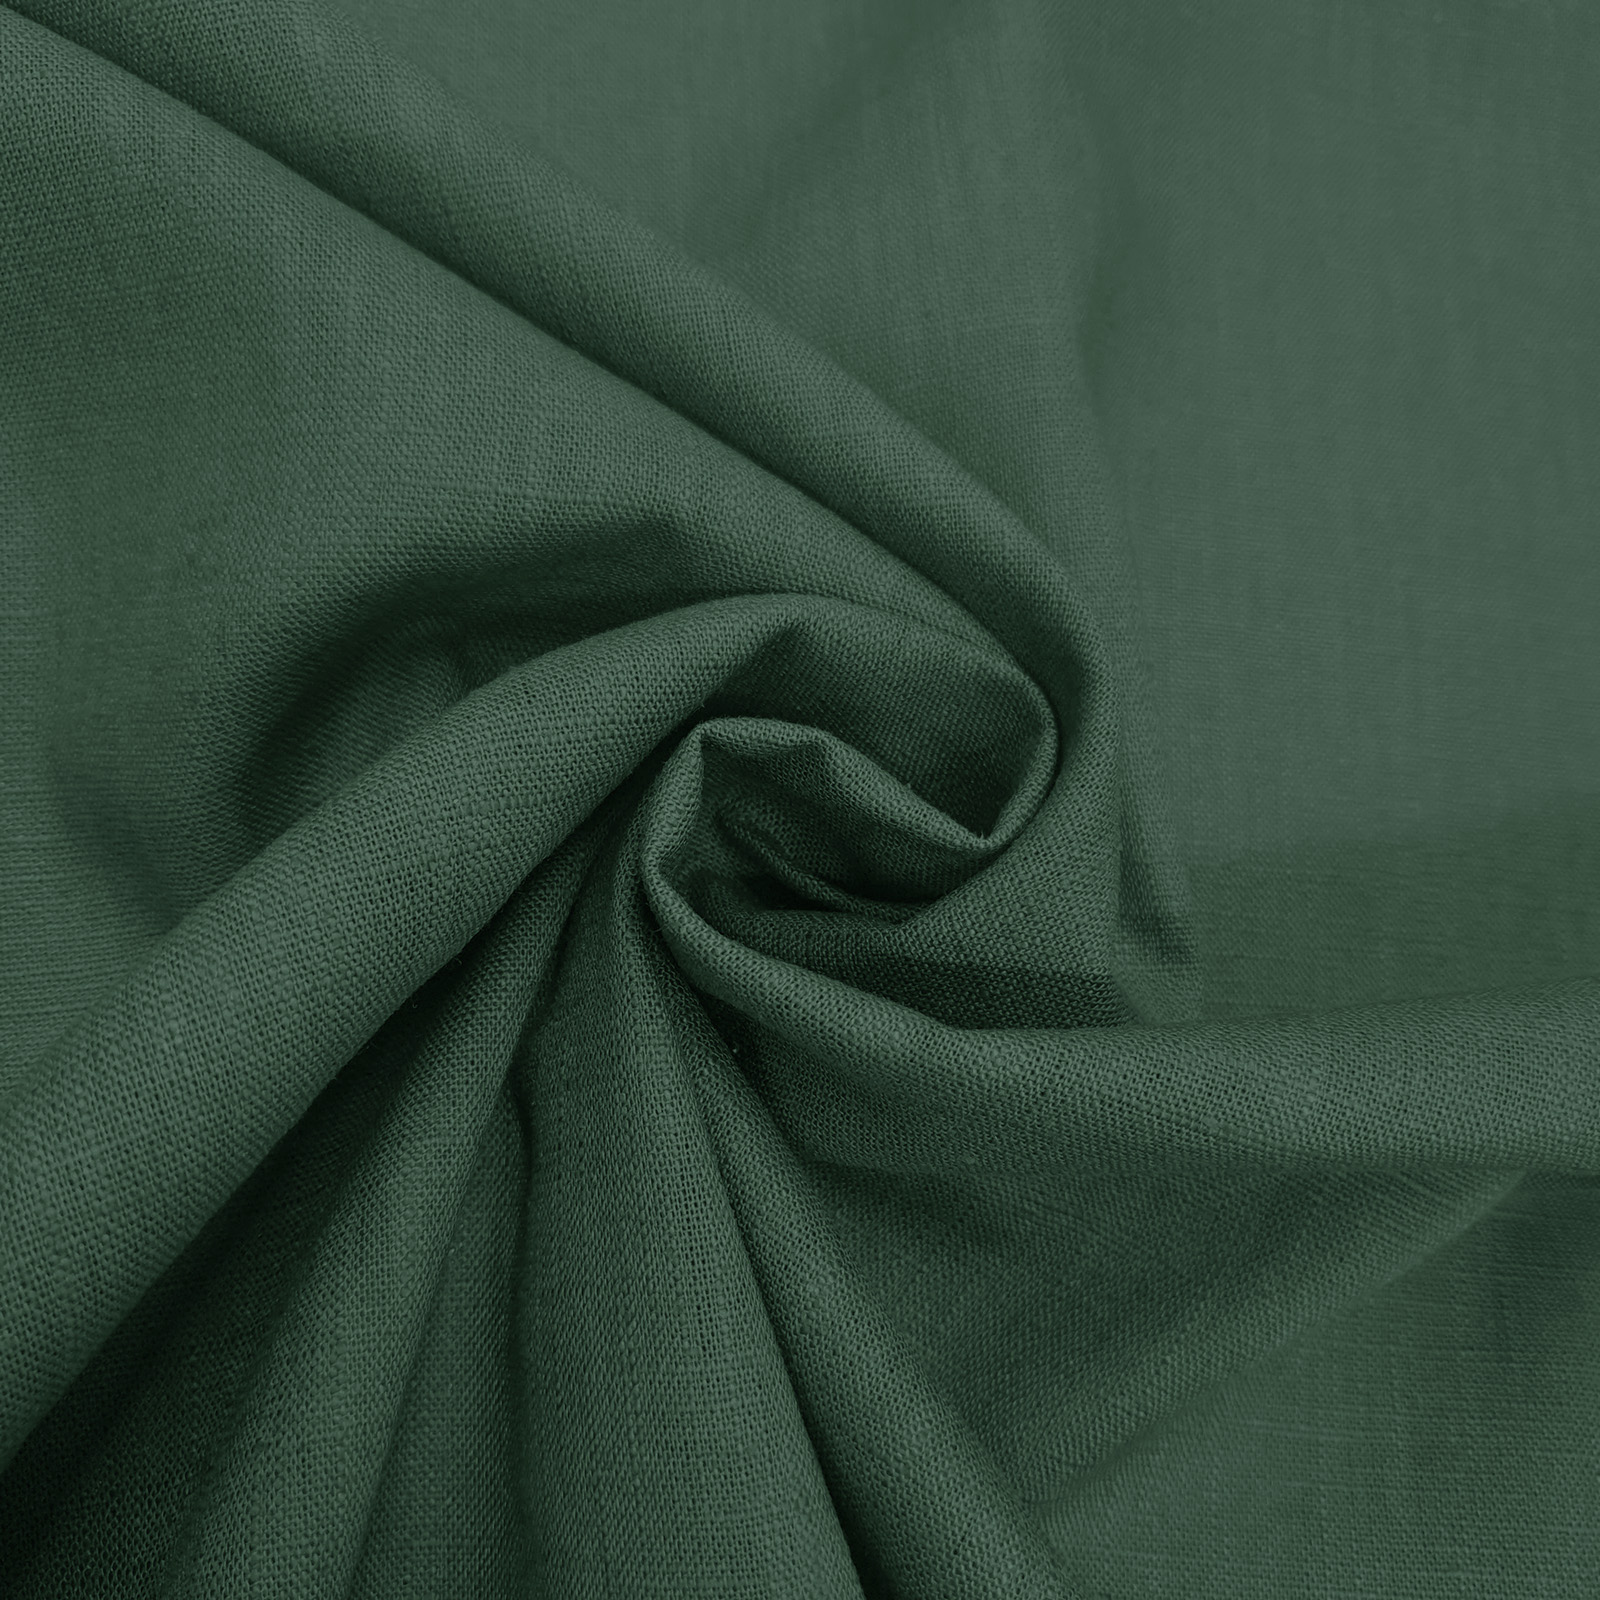 Rustico linen fabric - "jardin"